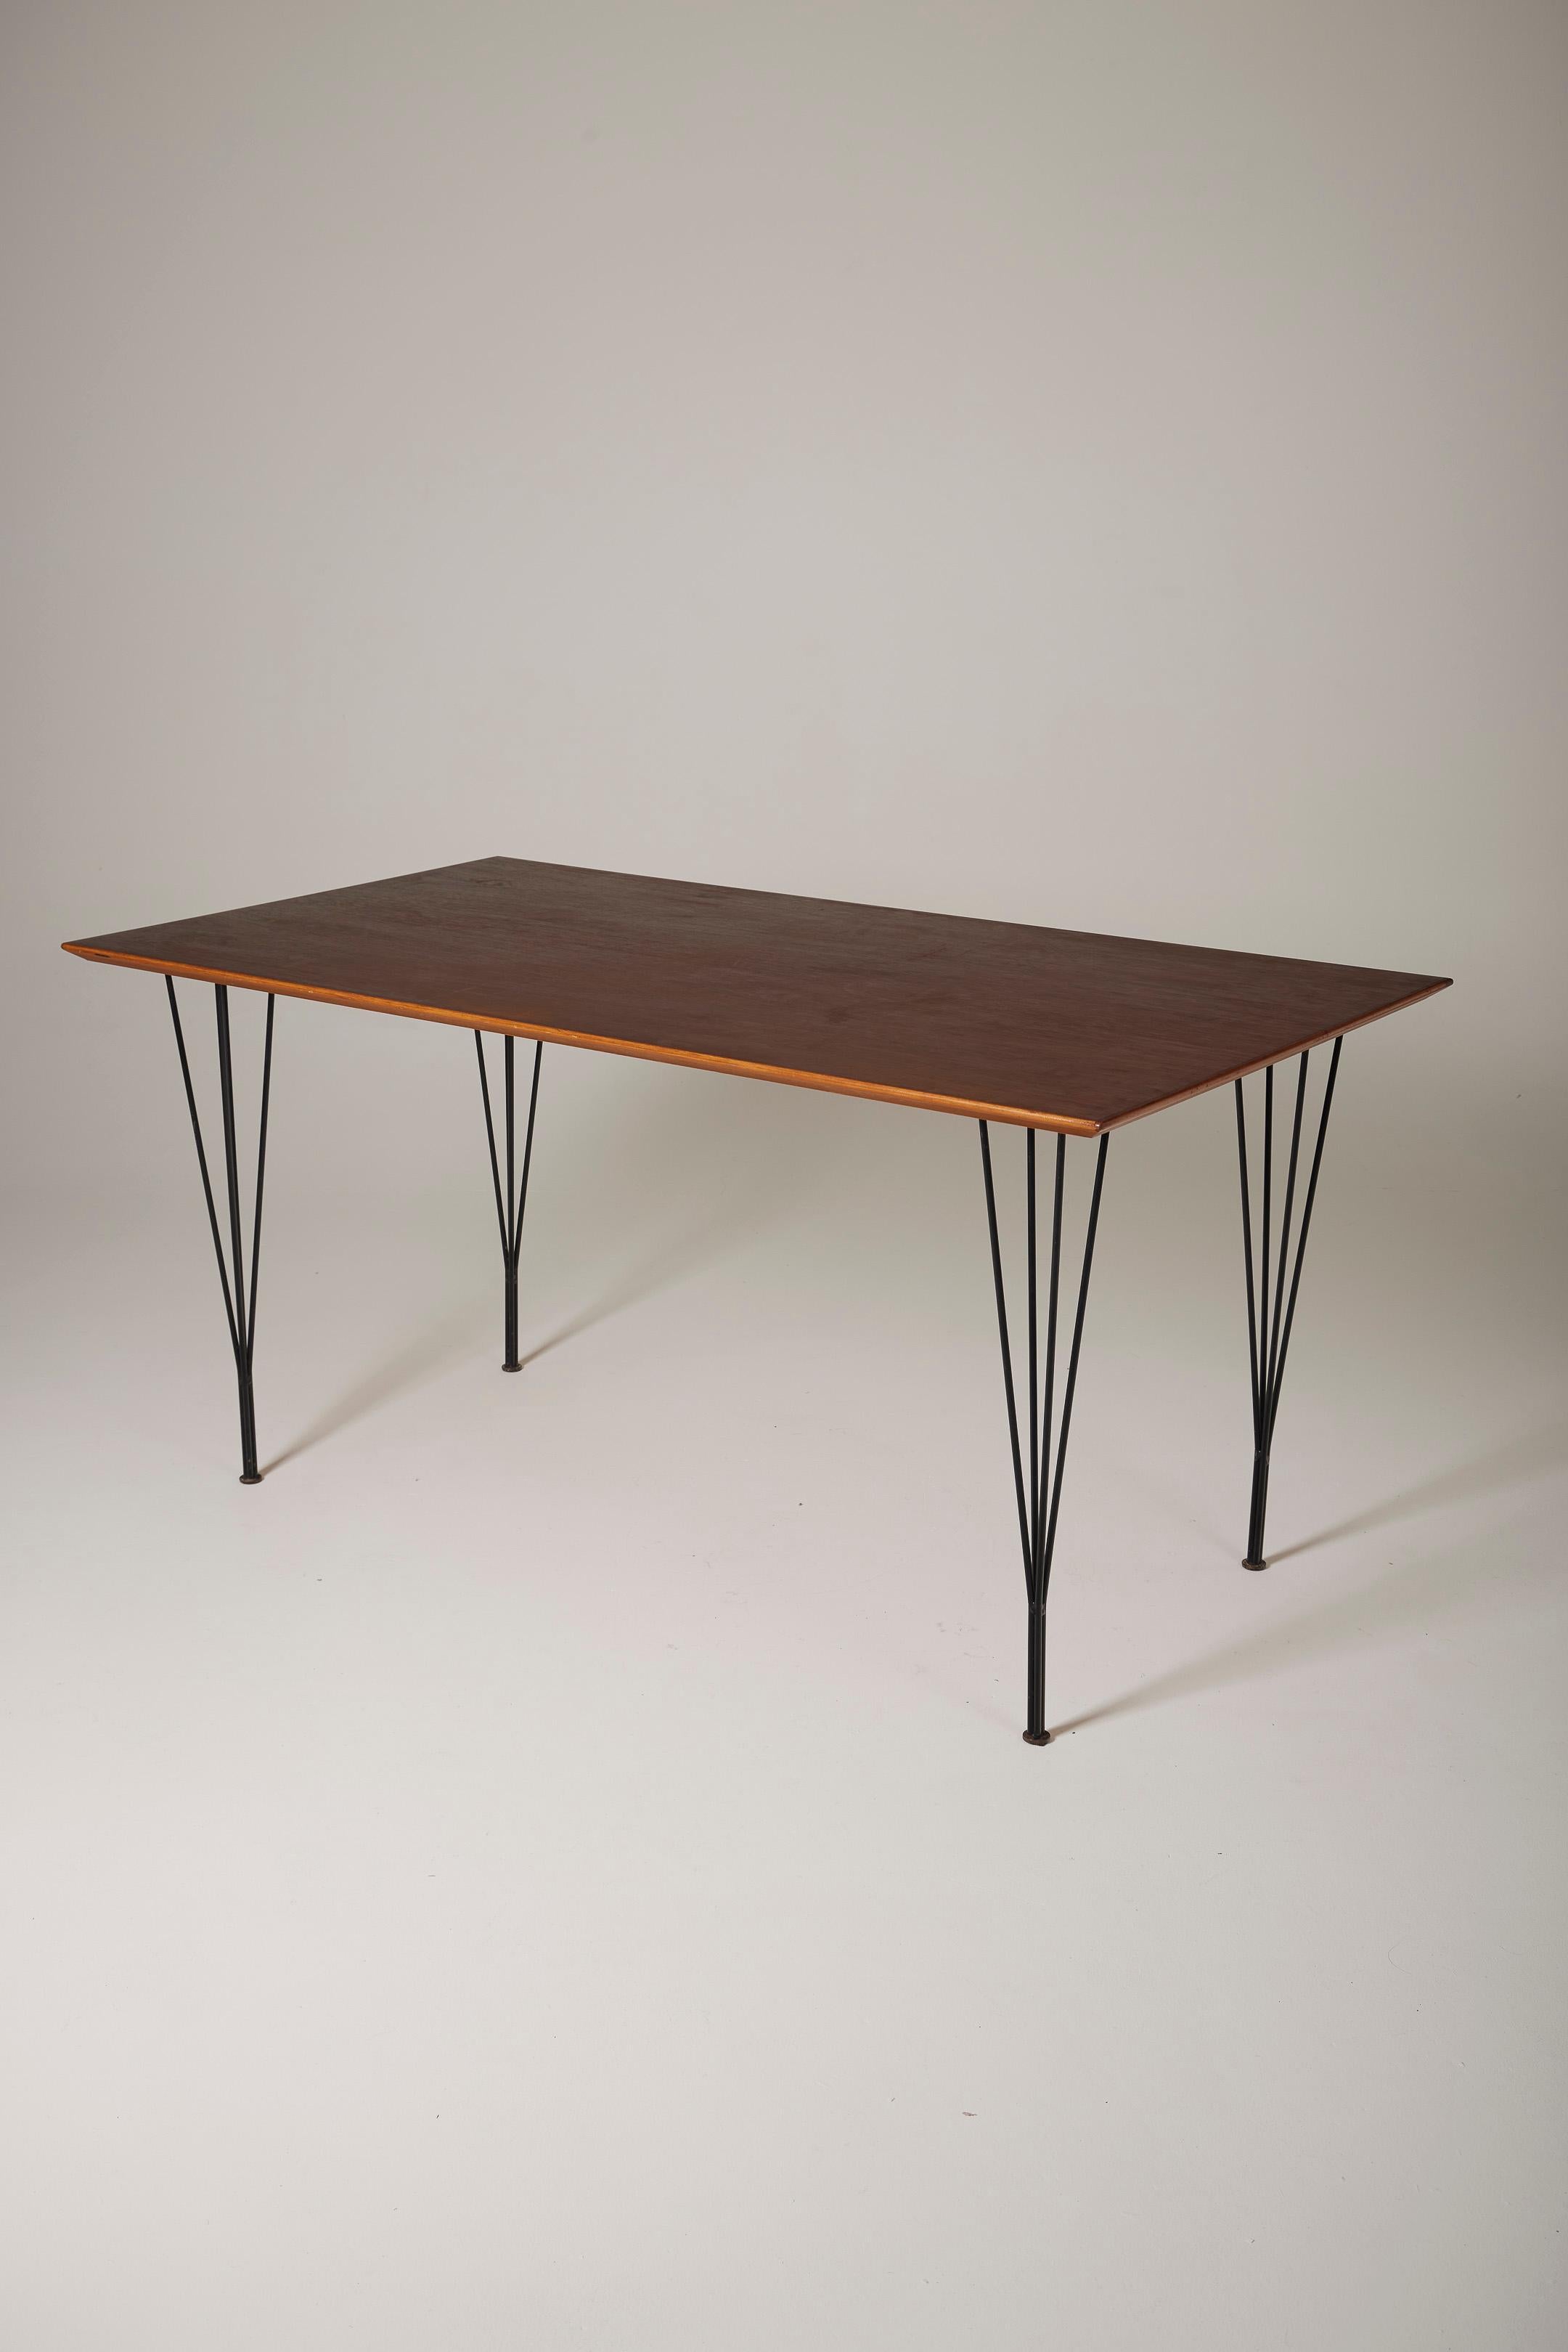 Table de salle à manger danoise des années 1960 composée d'un plateau en teck et de pieds tubulaires noirs. Très bon état.
DV680